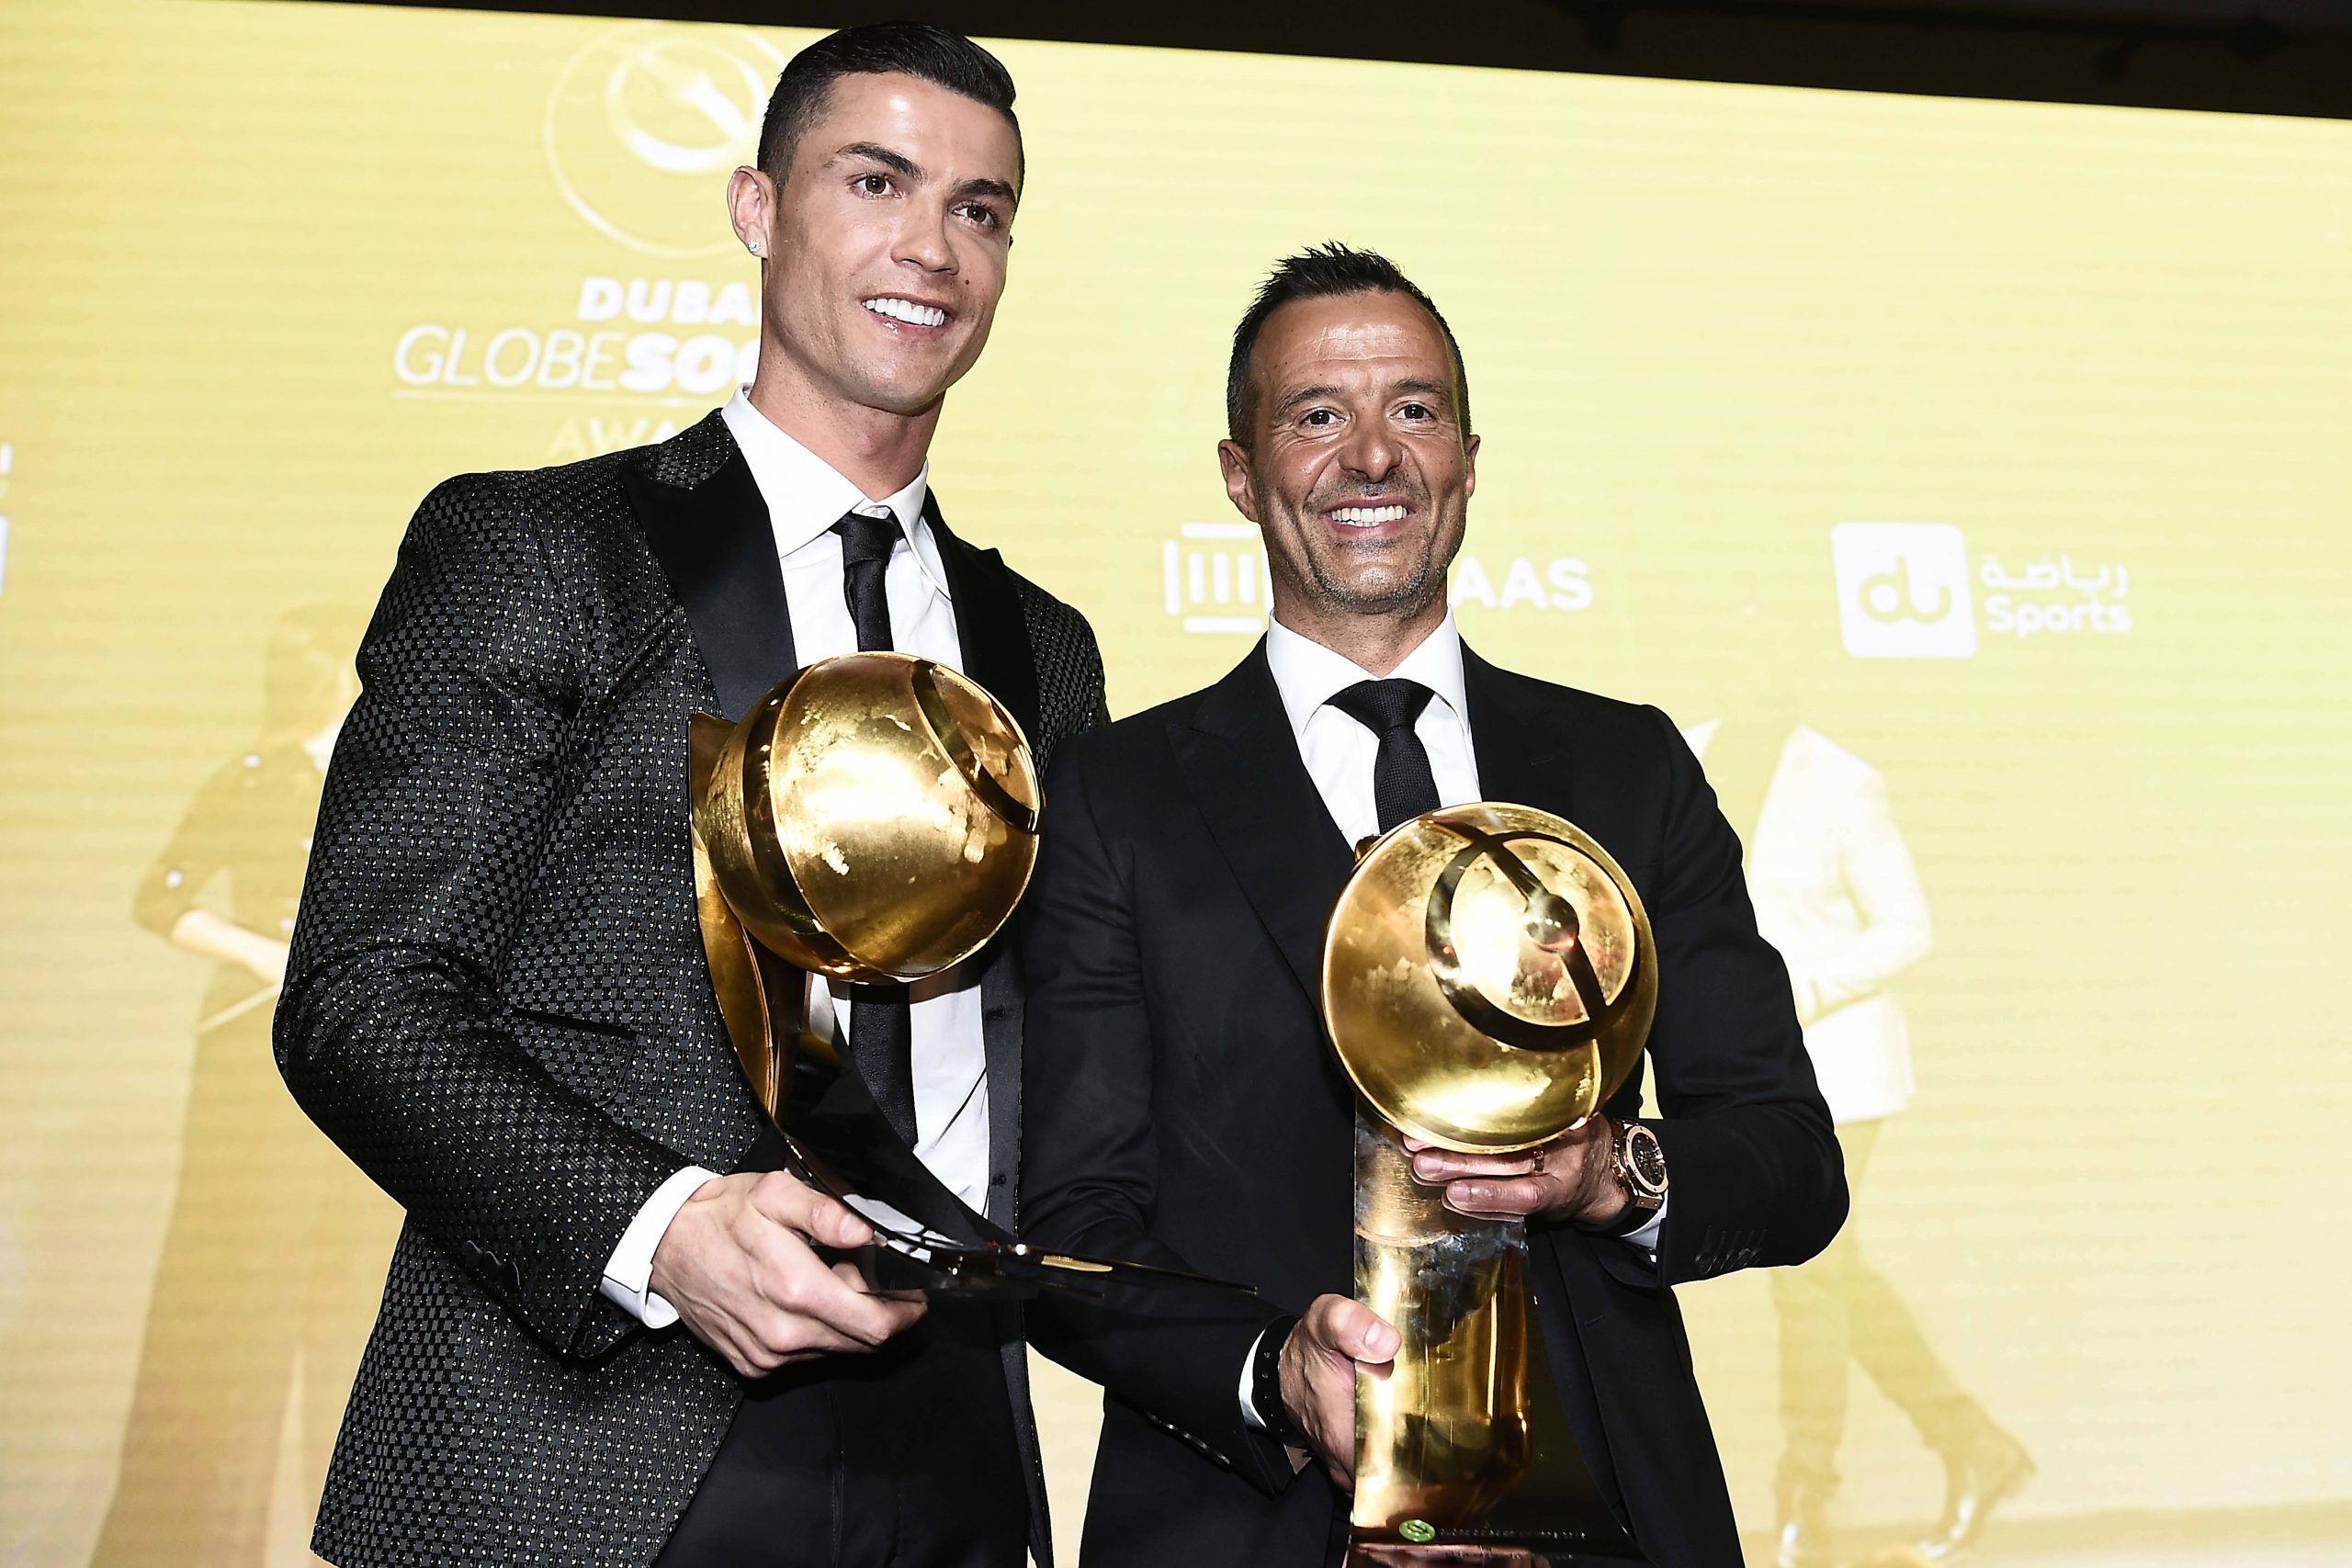 Arrependido, Jorge Mendes quer Cristiano Ronaldo de volta ao Real Madrid